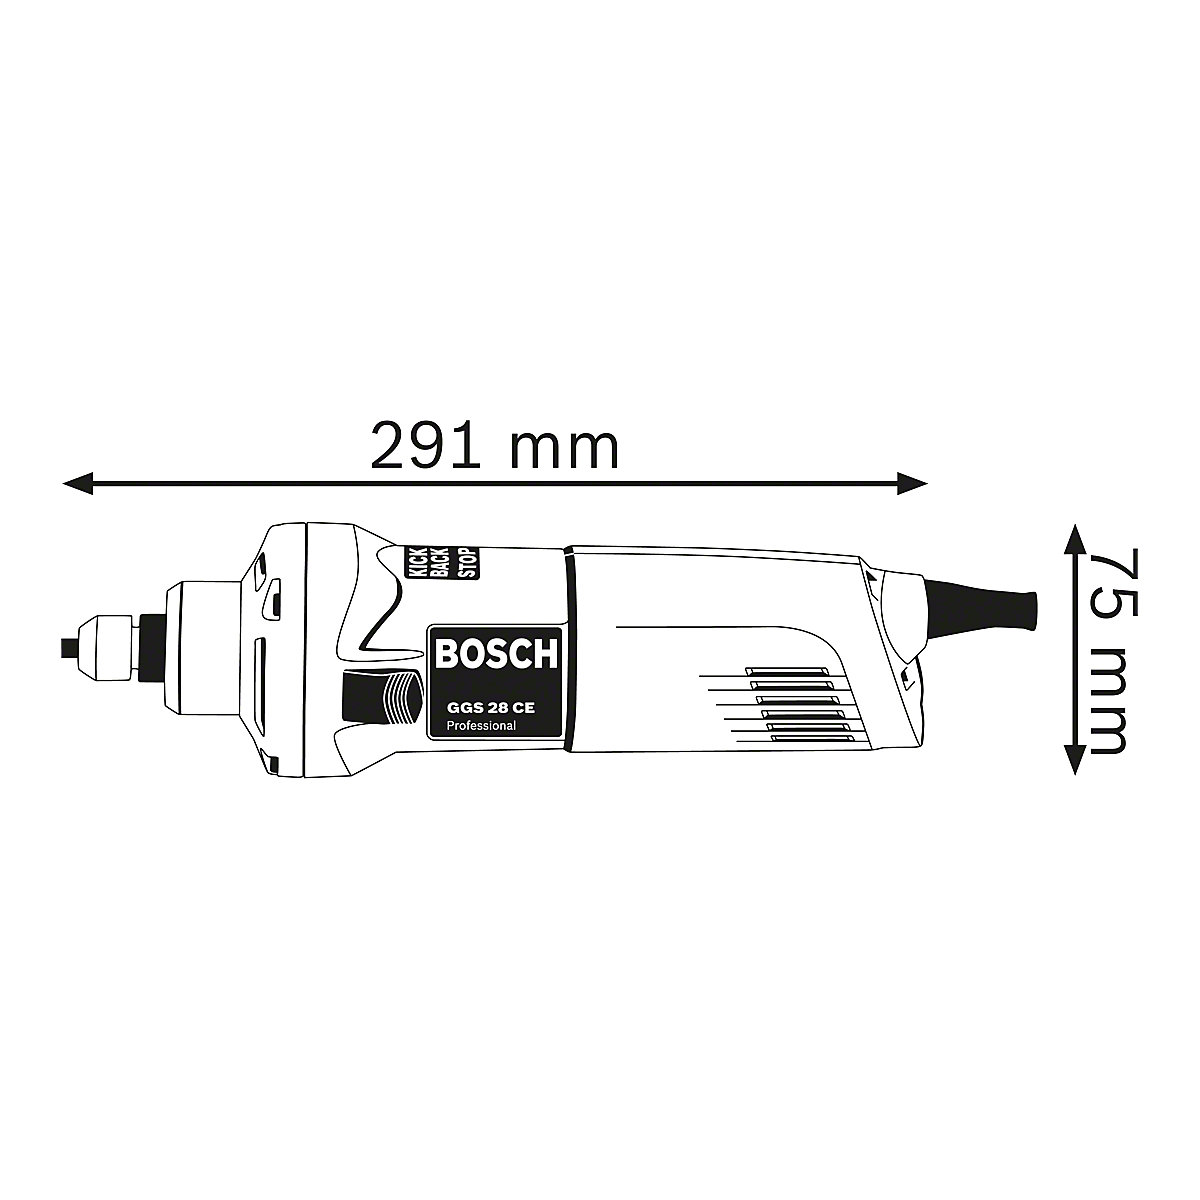 Rebarbadora reta GGS 28 CE Professional – Bosch (Imagem do produto 5)-4